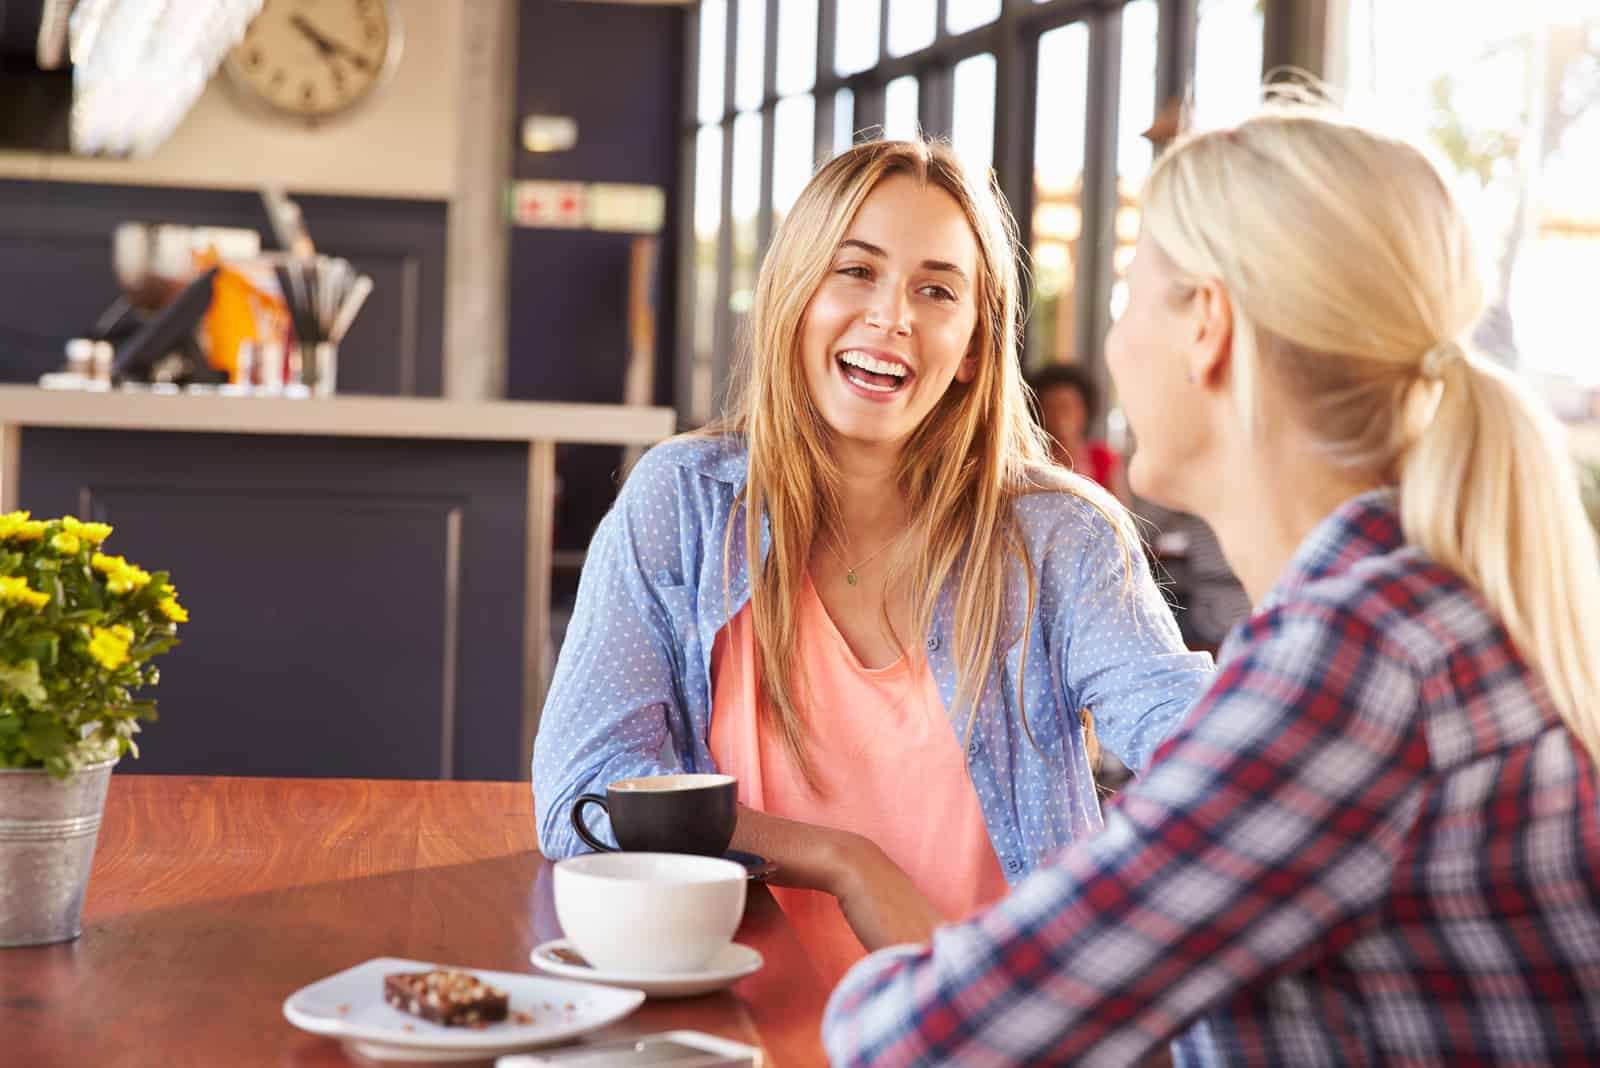 due amici sorridenti siedono a parlare davanti a un caffè